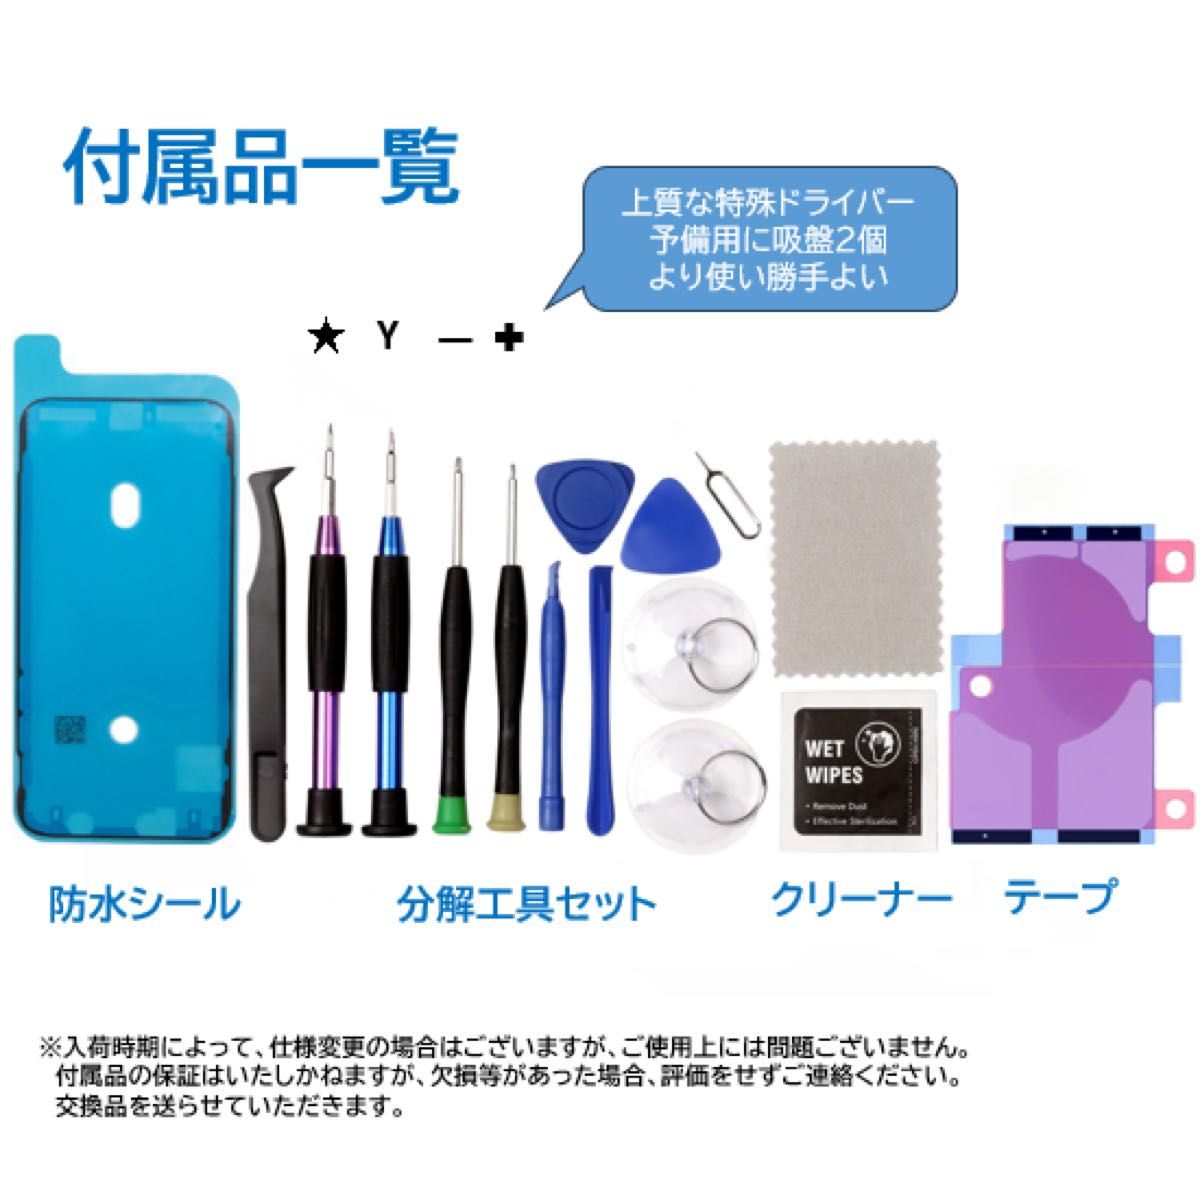 【新品】iPhone12ProMax バッテリー 交換 PSE認証 工具・保証付